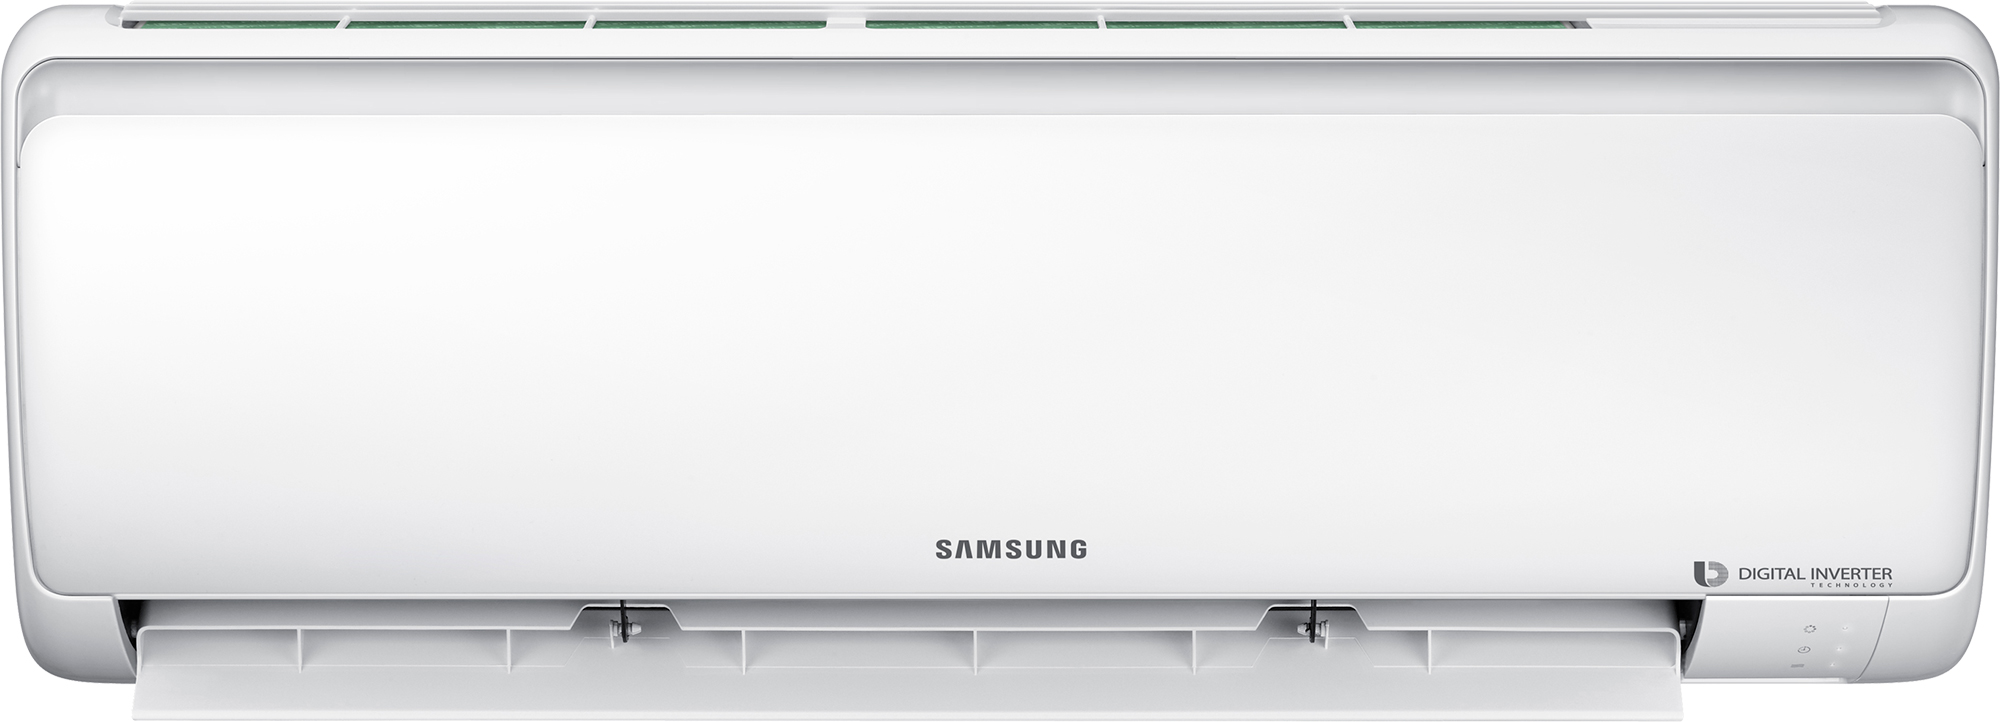 Кондиционер сплит-система Samsung AR18RSFPAWQNER / AR18RSFPAWQXER цена 0.00 грн - фотография 2